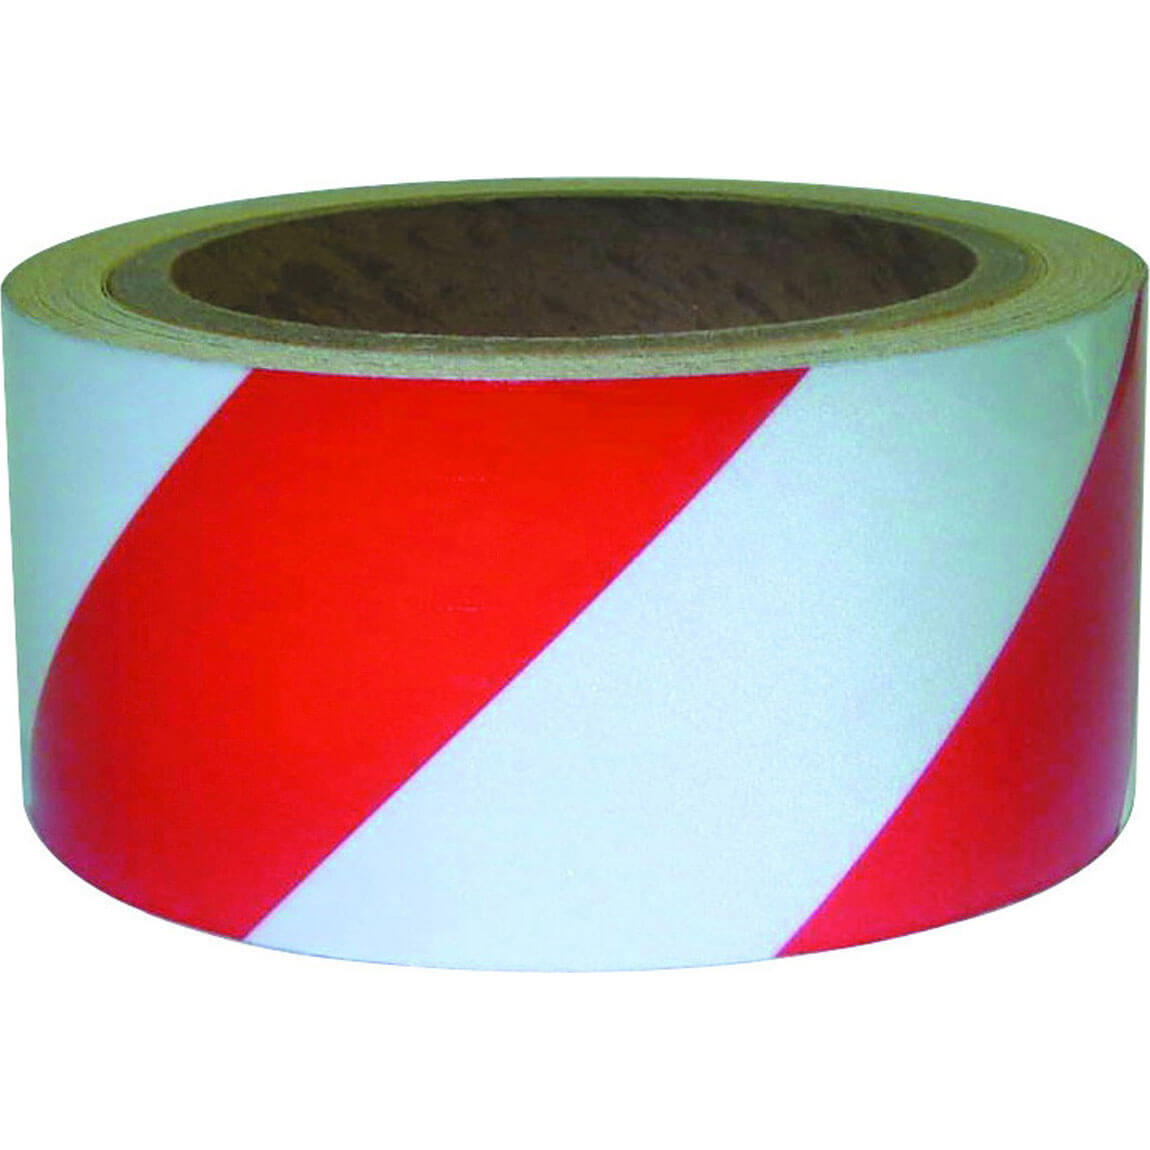 Image of Sirius Adhesive Hazard Warning Tape Red / White 50mm 33m